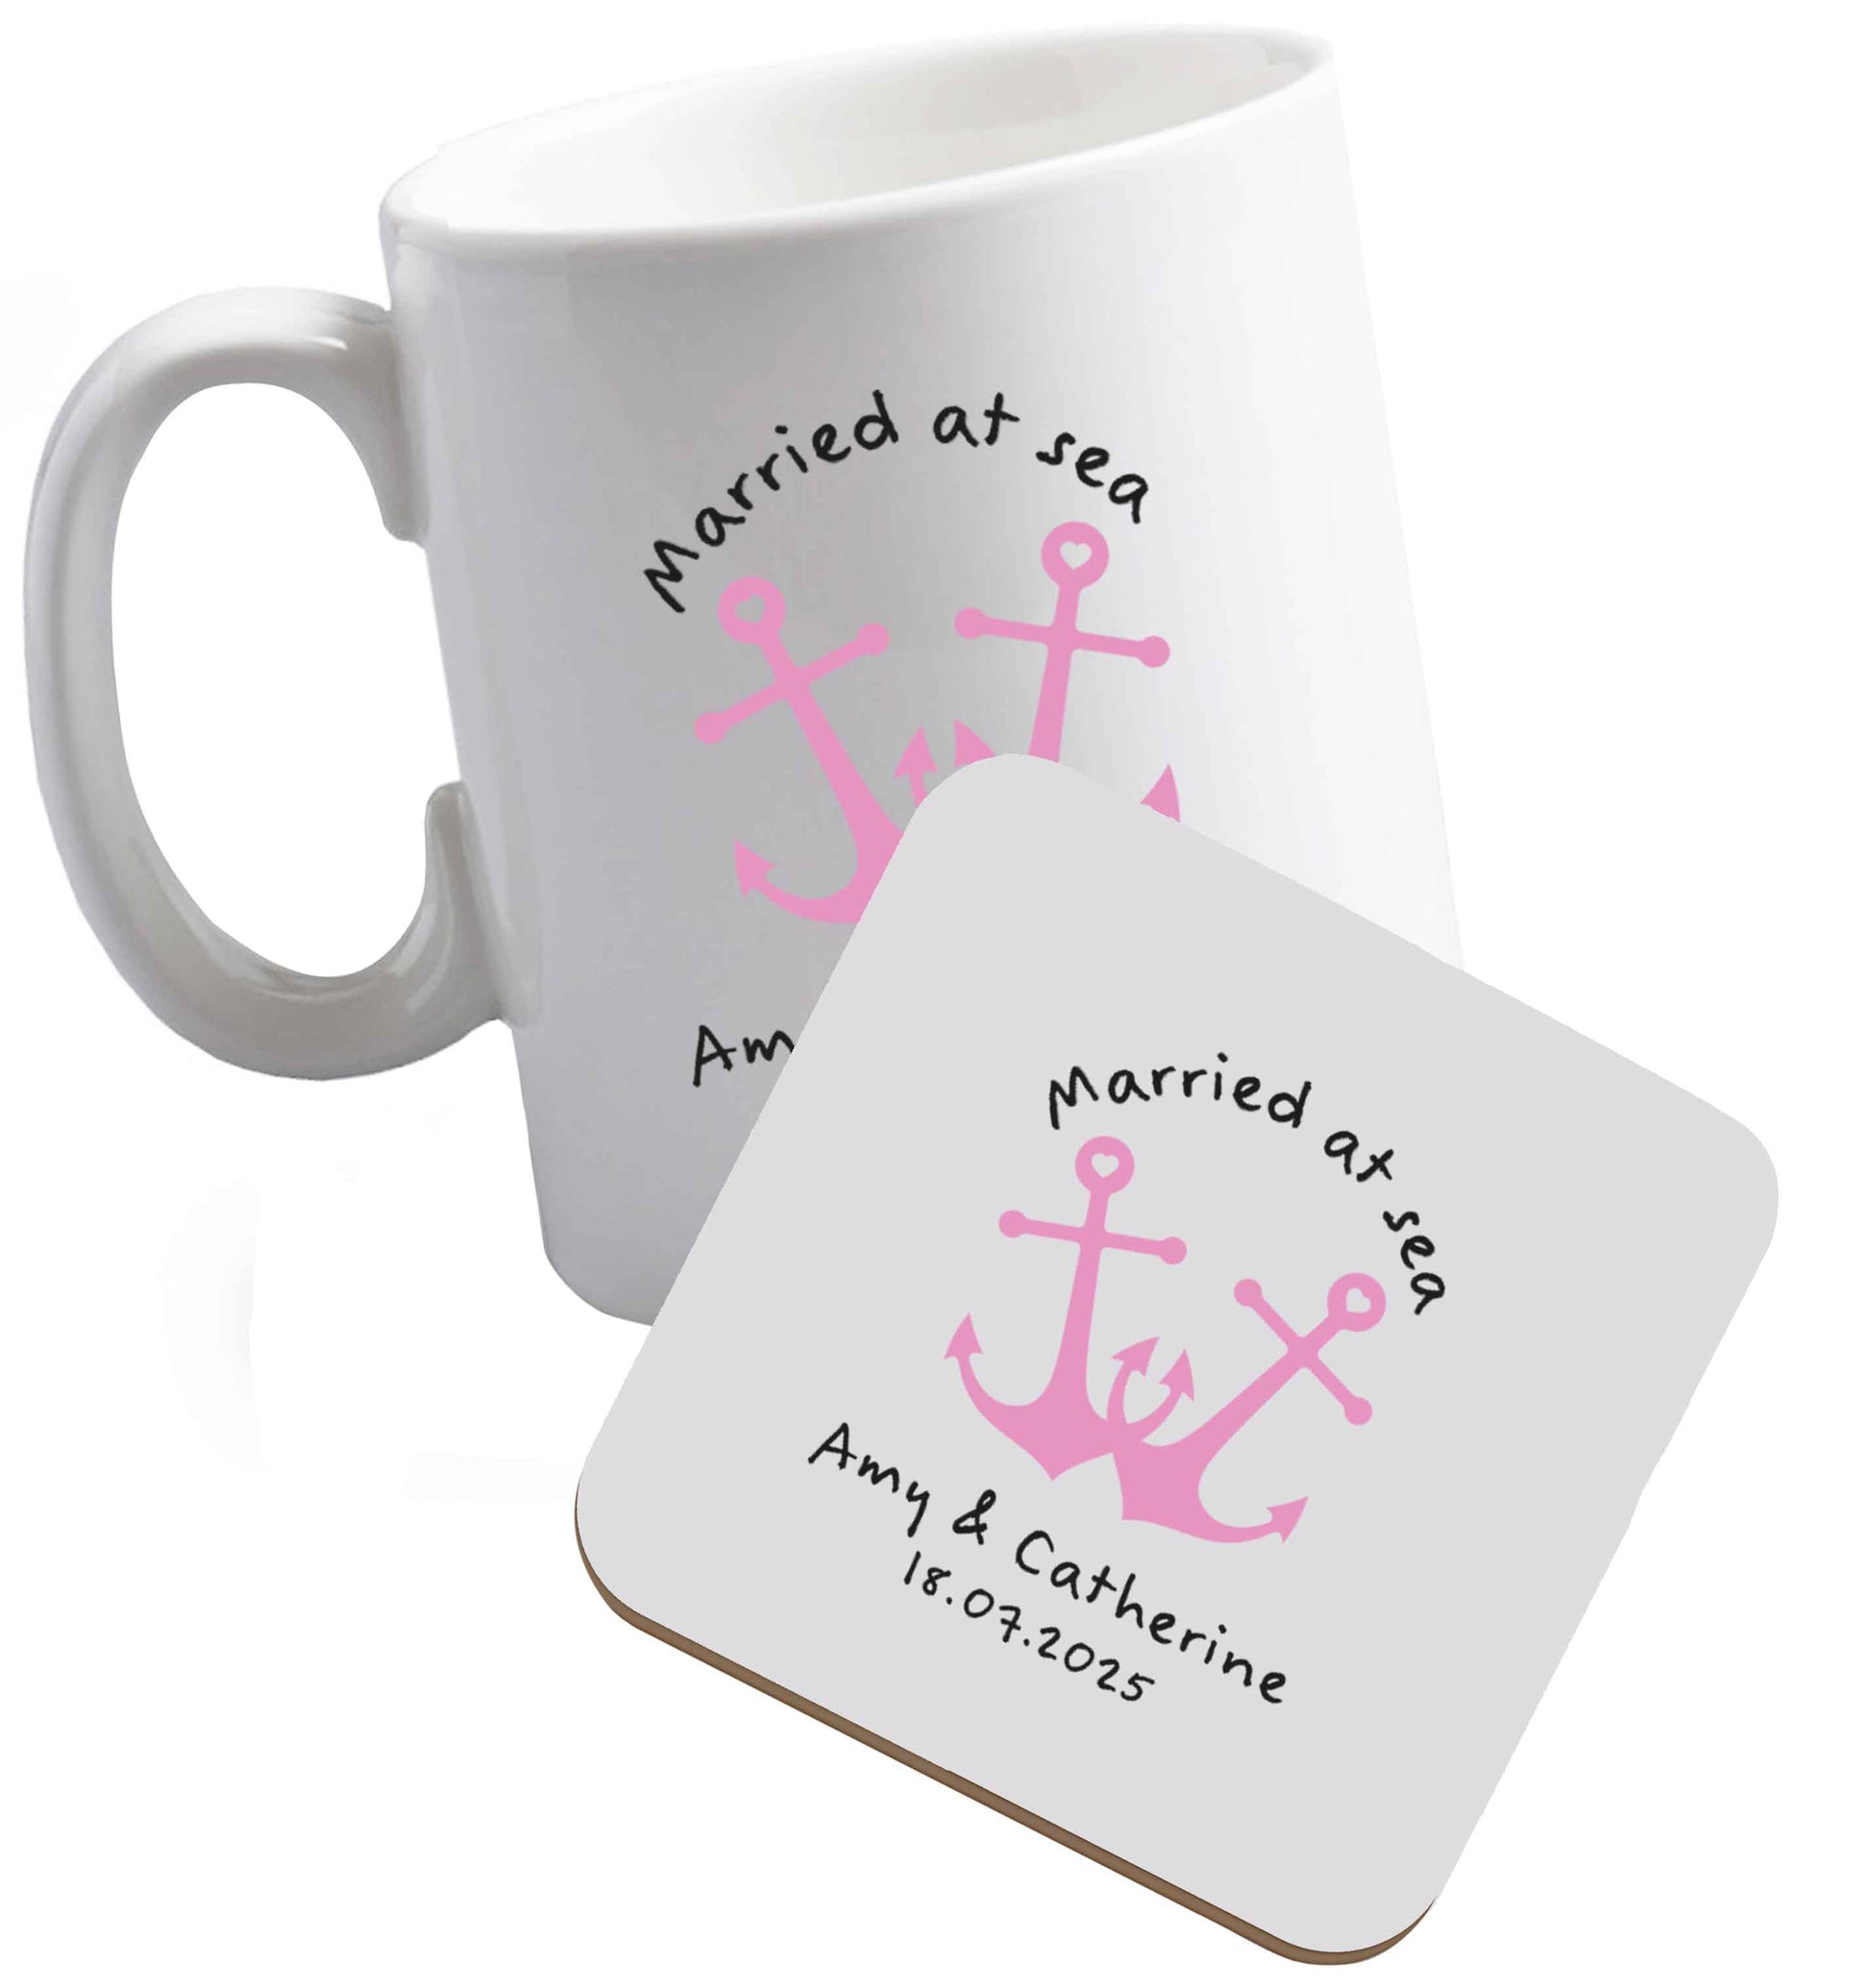 10 oz Married at sea pink anchors ceramic mug and coaster set right handed